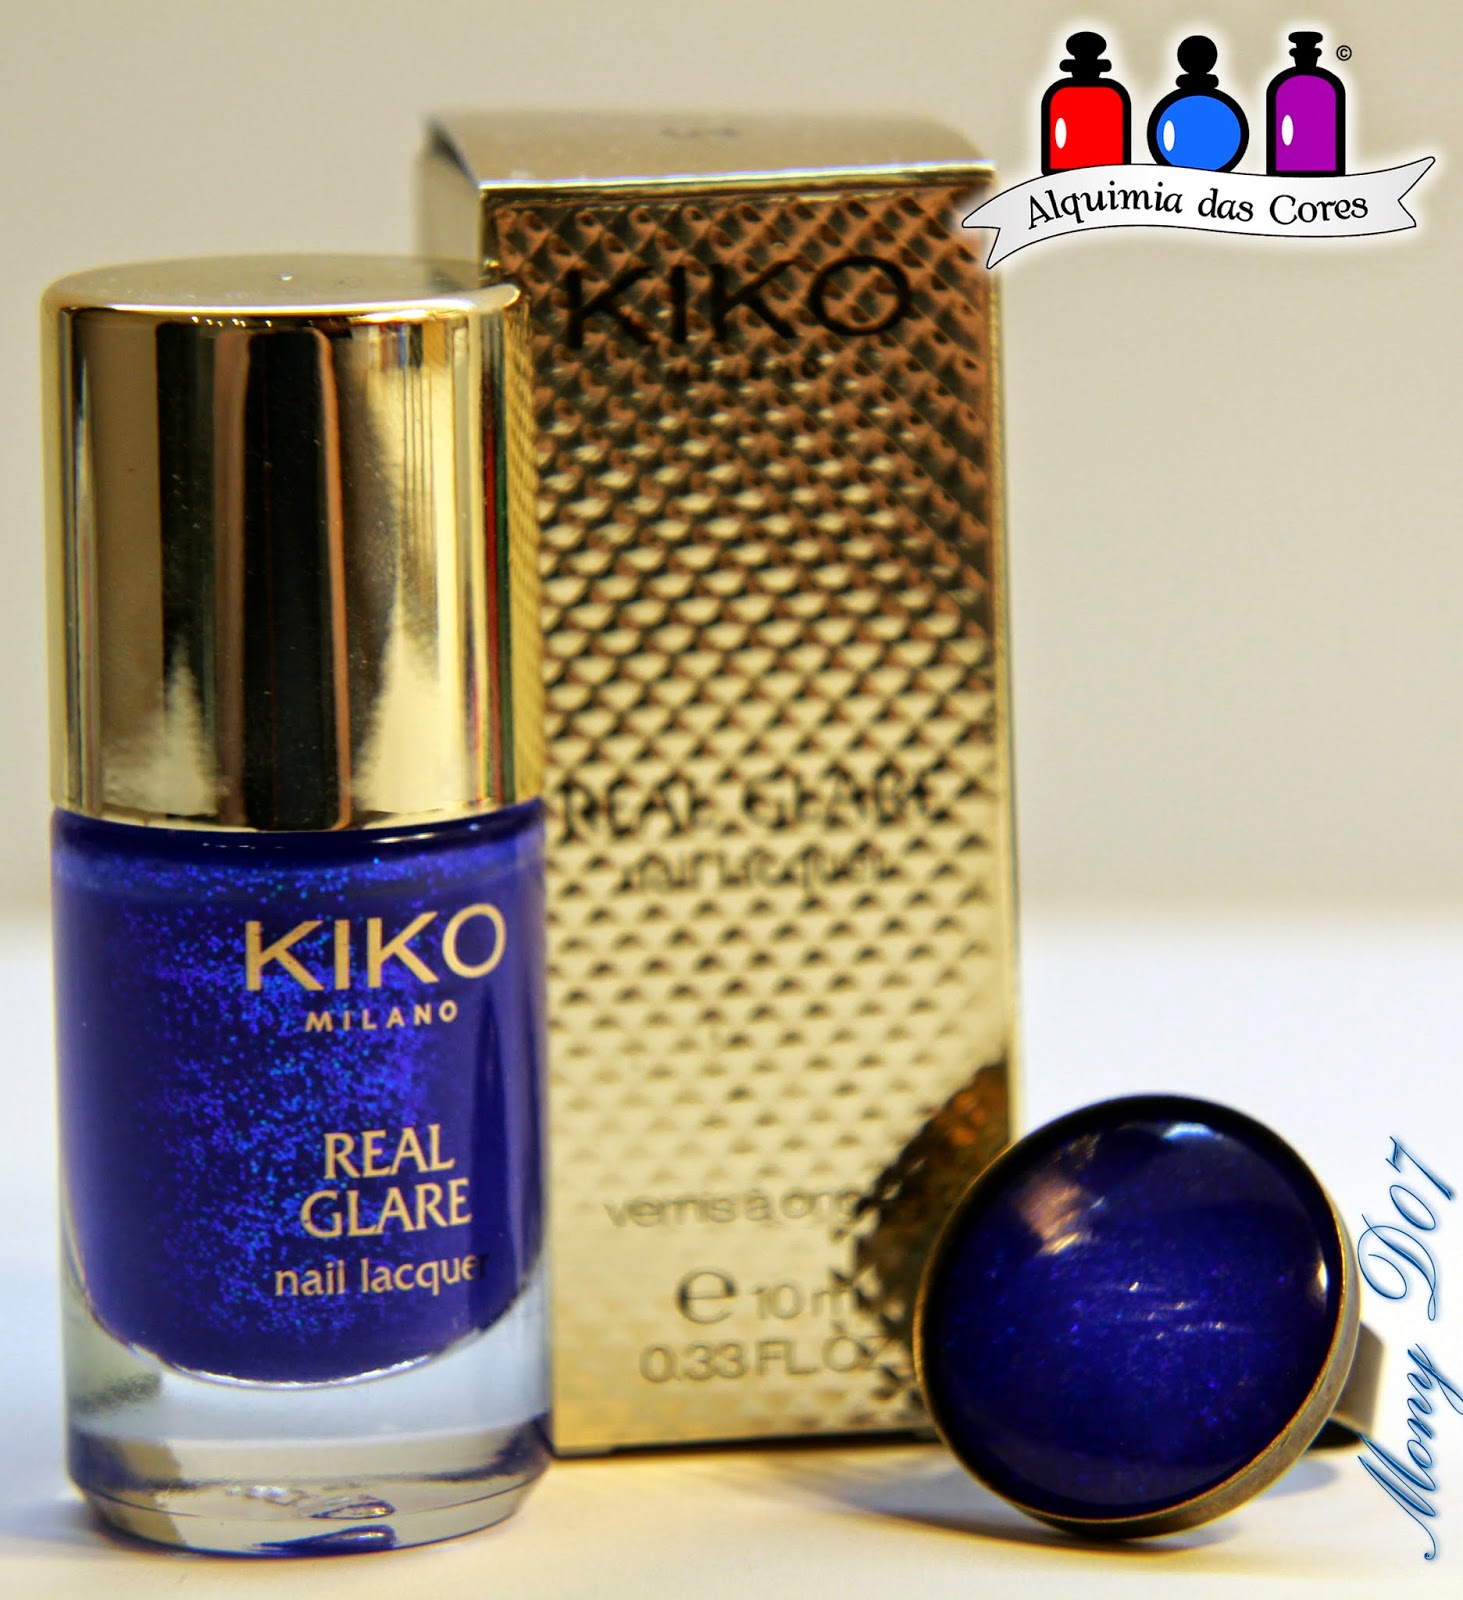 Keen Cobalt Blue, Kiko, Liquid Sand, Royal Grare, Azul, Comparação, Swatches, Mony D07, Simone D07,